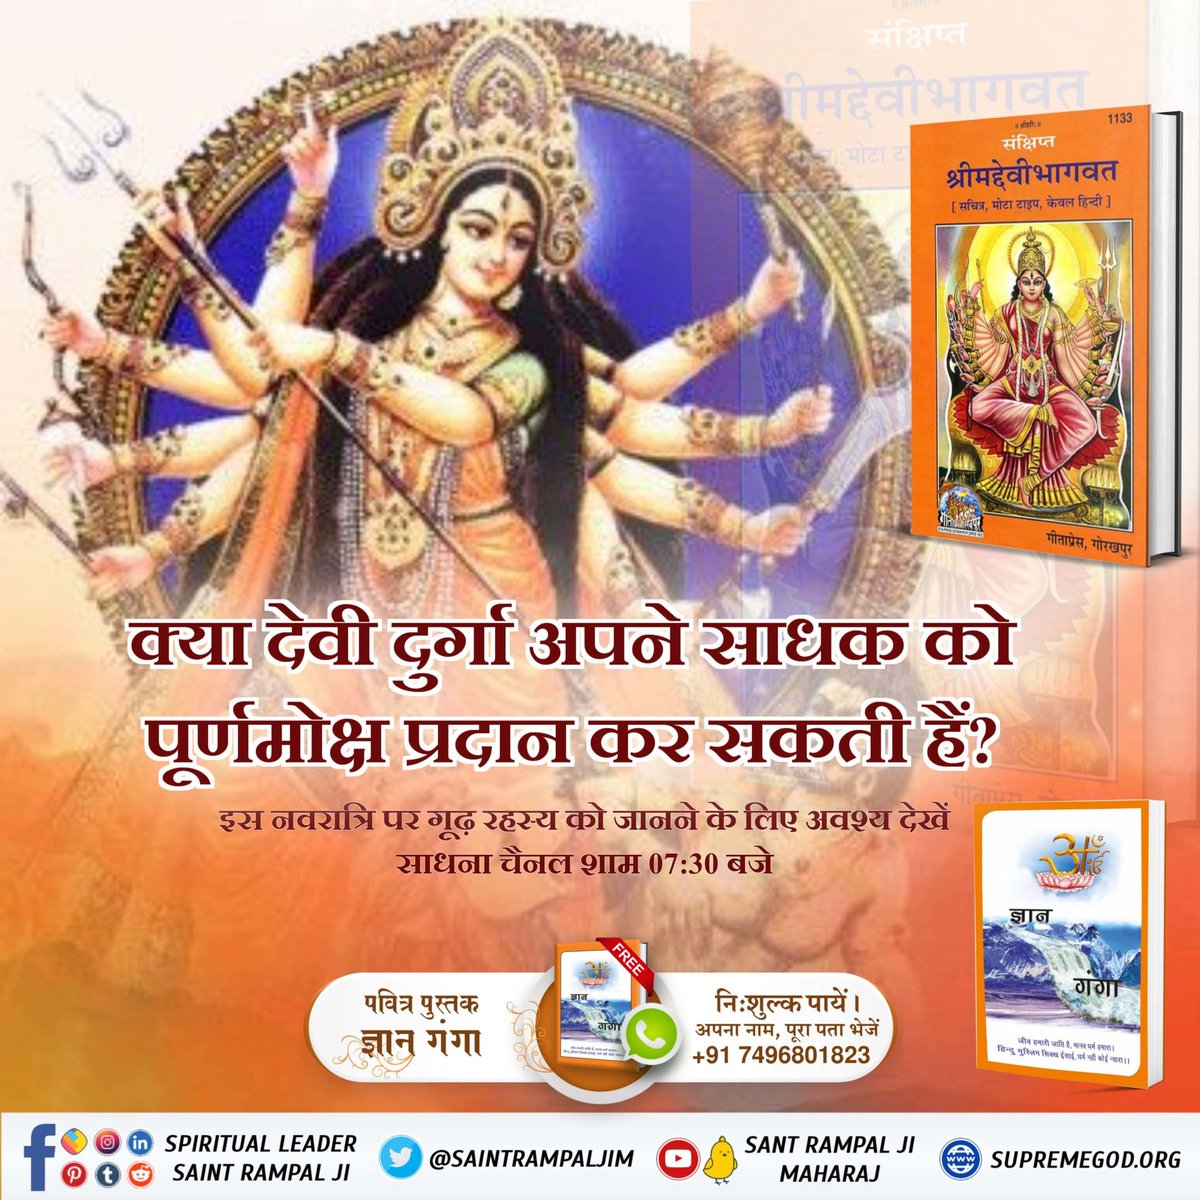 #देवी_मां_को_ऐसे_करें_प्रसन्न क्या देवी दुर्गा अपने साधक को पूर्णमोक्ष प्रदान कर सकती हैं? इस नवरात्रि पर गूढ़ रहस्य को जानने के लिए अवश्य देखें साधना चैनल शाम 07:30 बजे Read Gyan Ganga